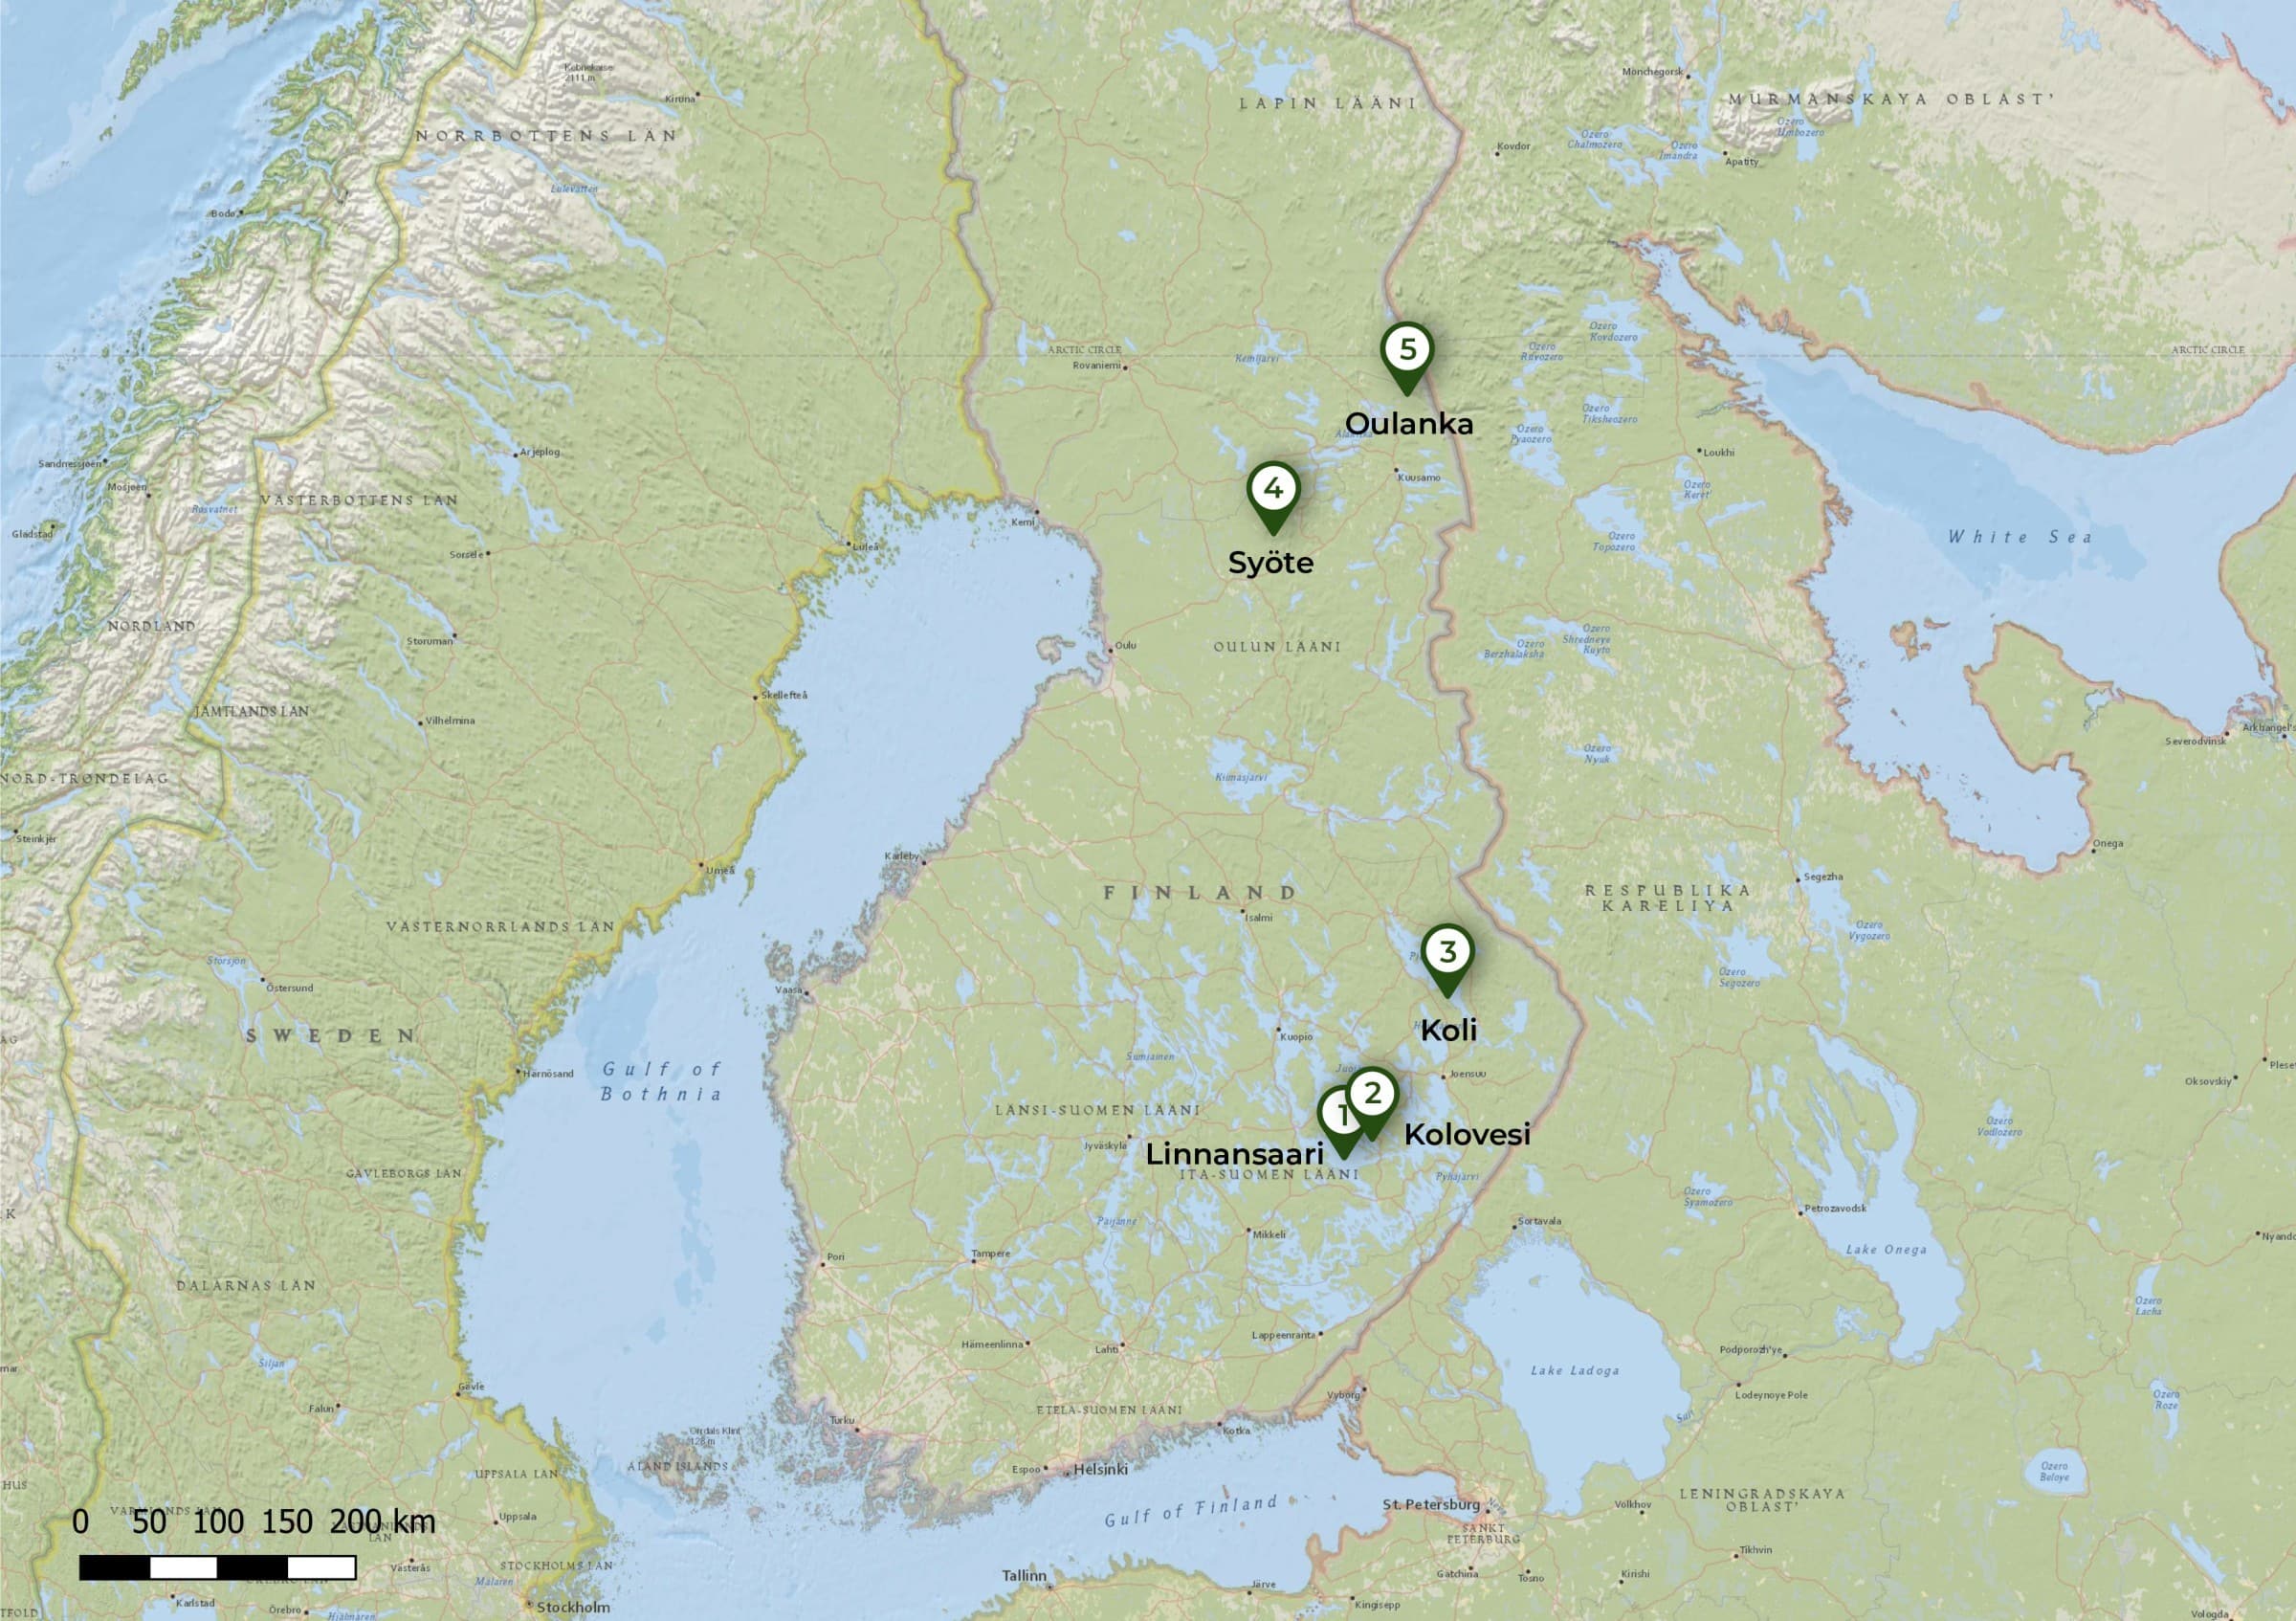 De 5 nationale parken in Finland op de kaart